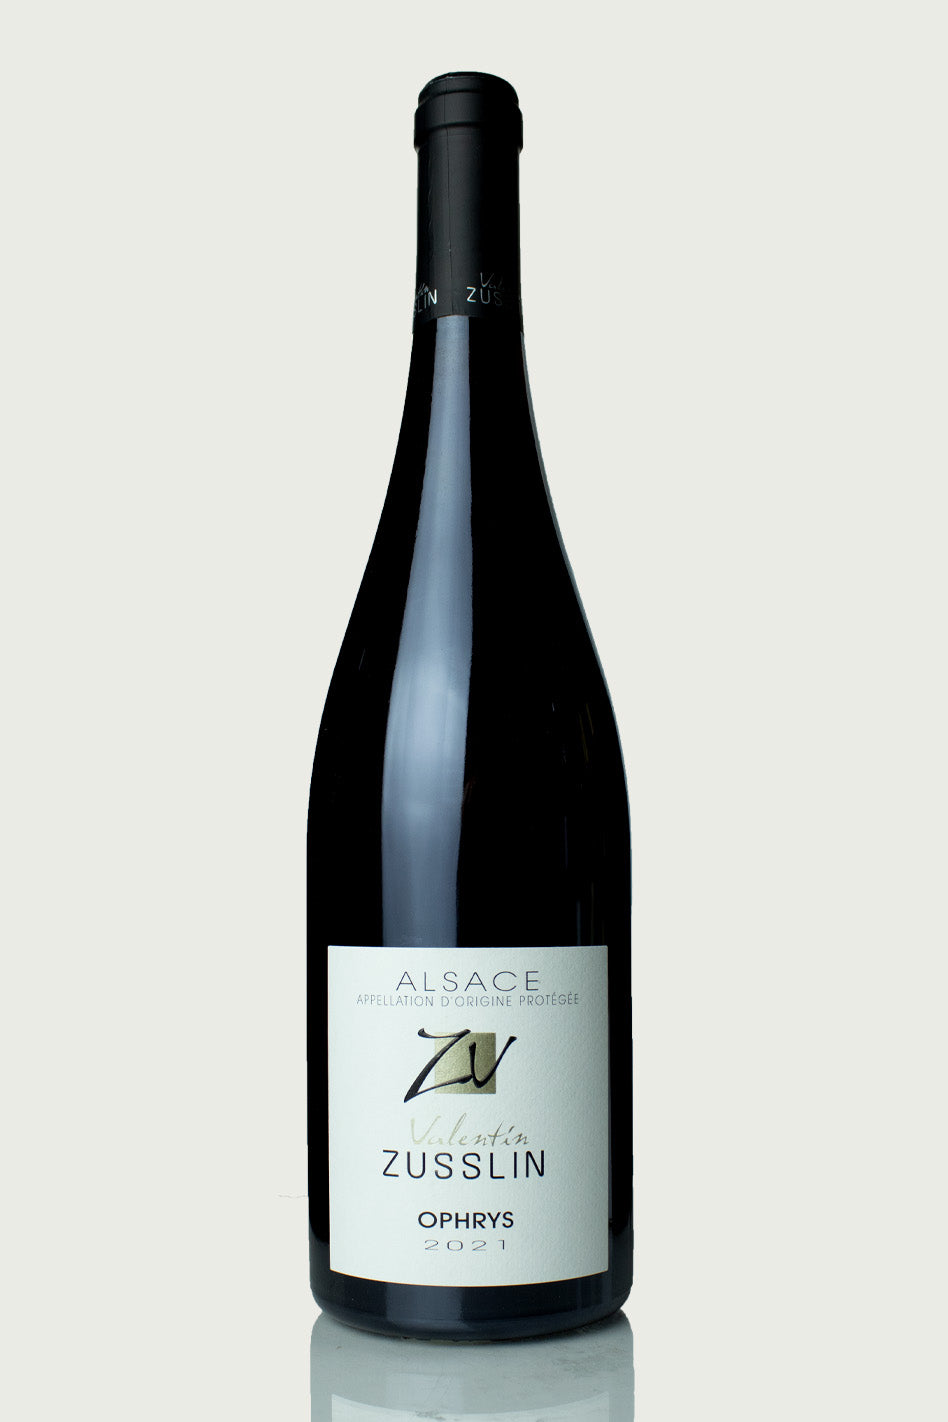 Valentin Zusslin 'Ophrys' 2021